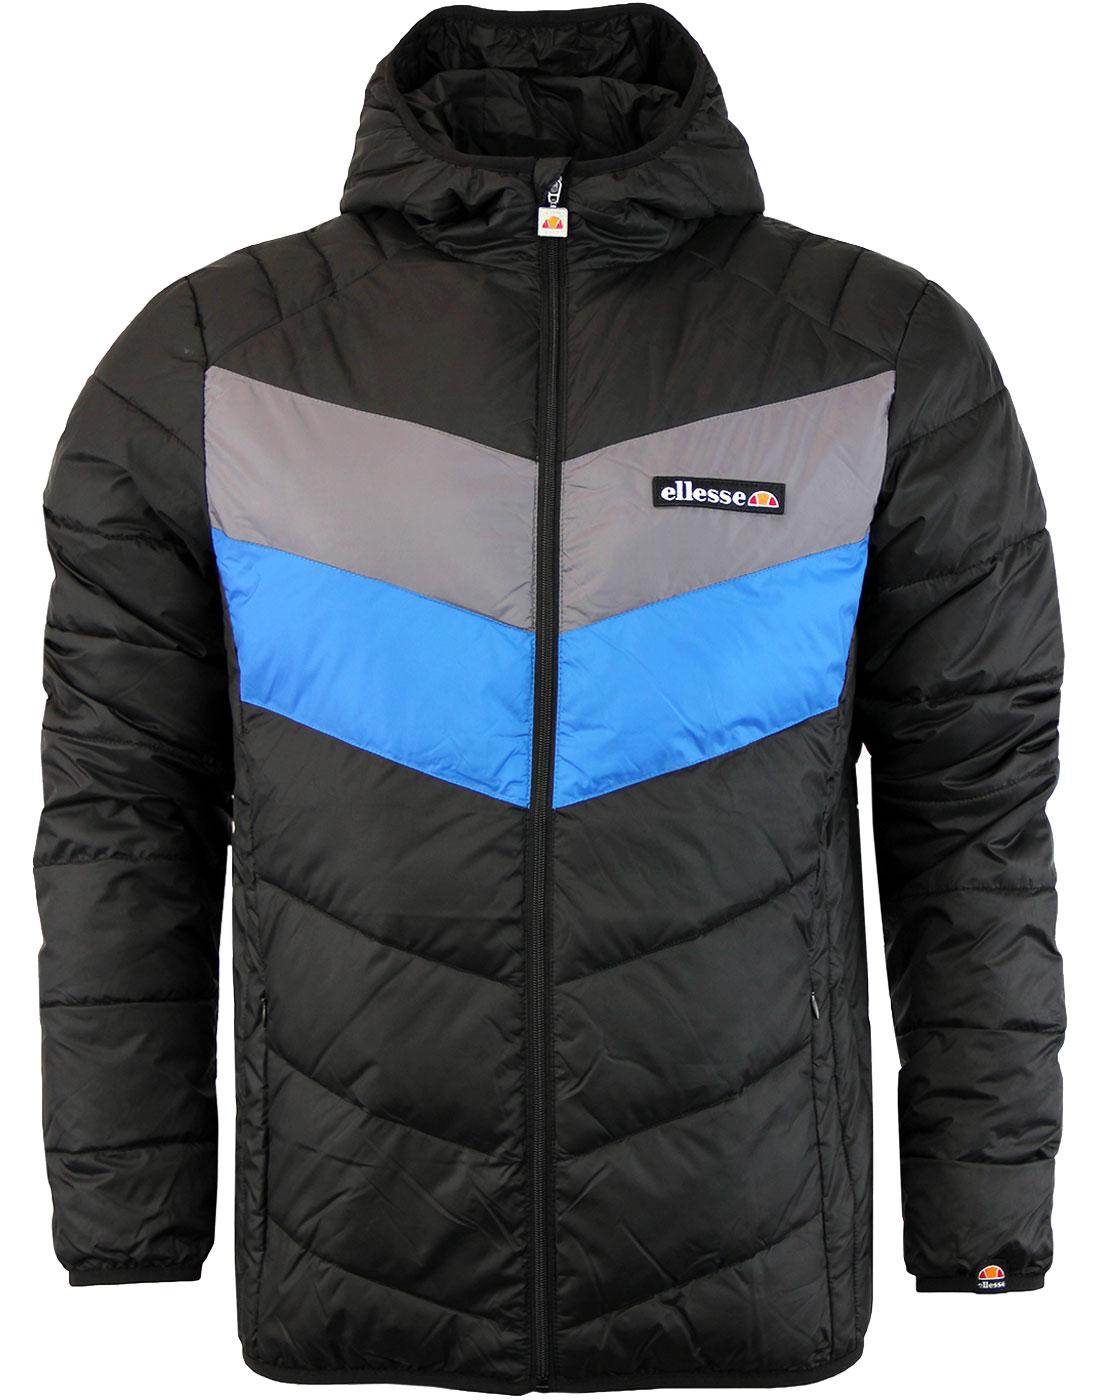 Ginap ELLESSE Retro Chevron Stripe Ski Jacket A